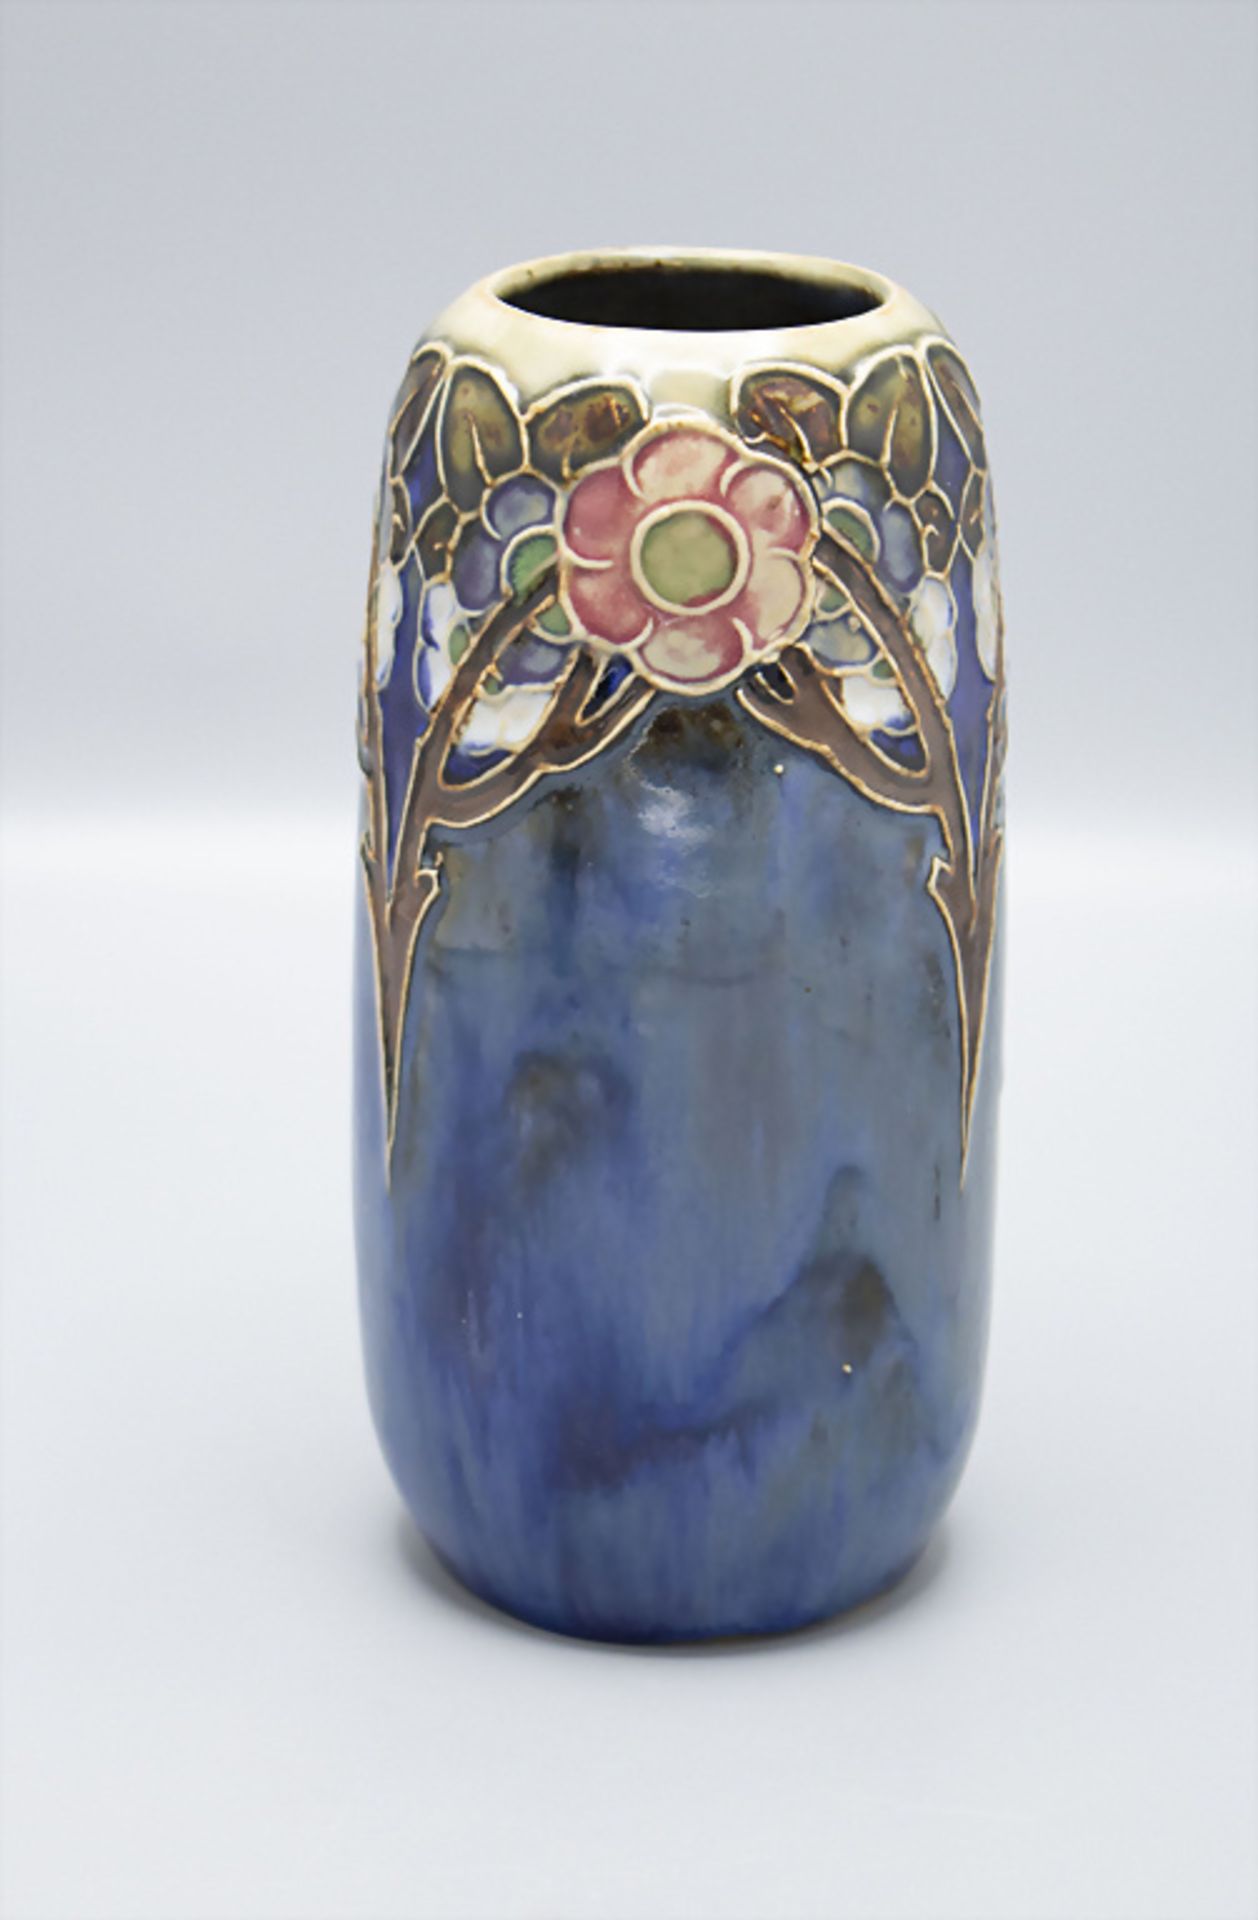 Jugendstil Vase mit stilisierten Blütenzweigen / An Art Nouveau stoneware vase with stylized ... - Image 2 of 3